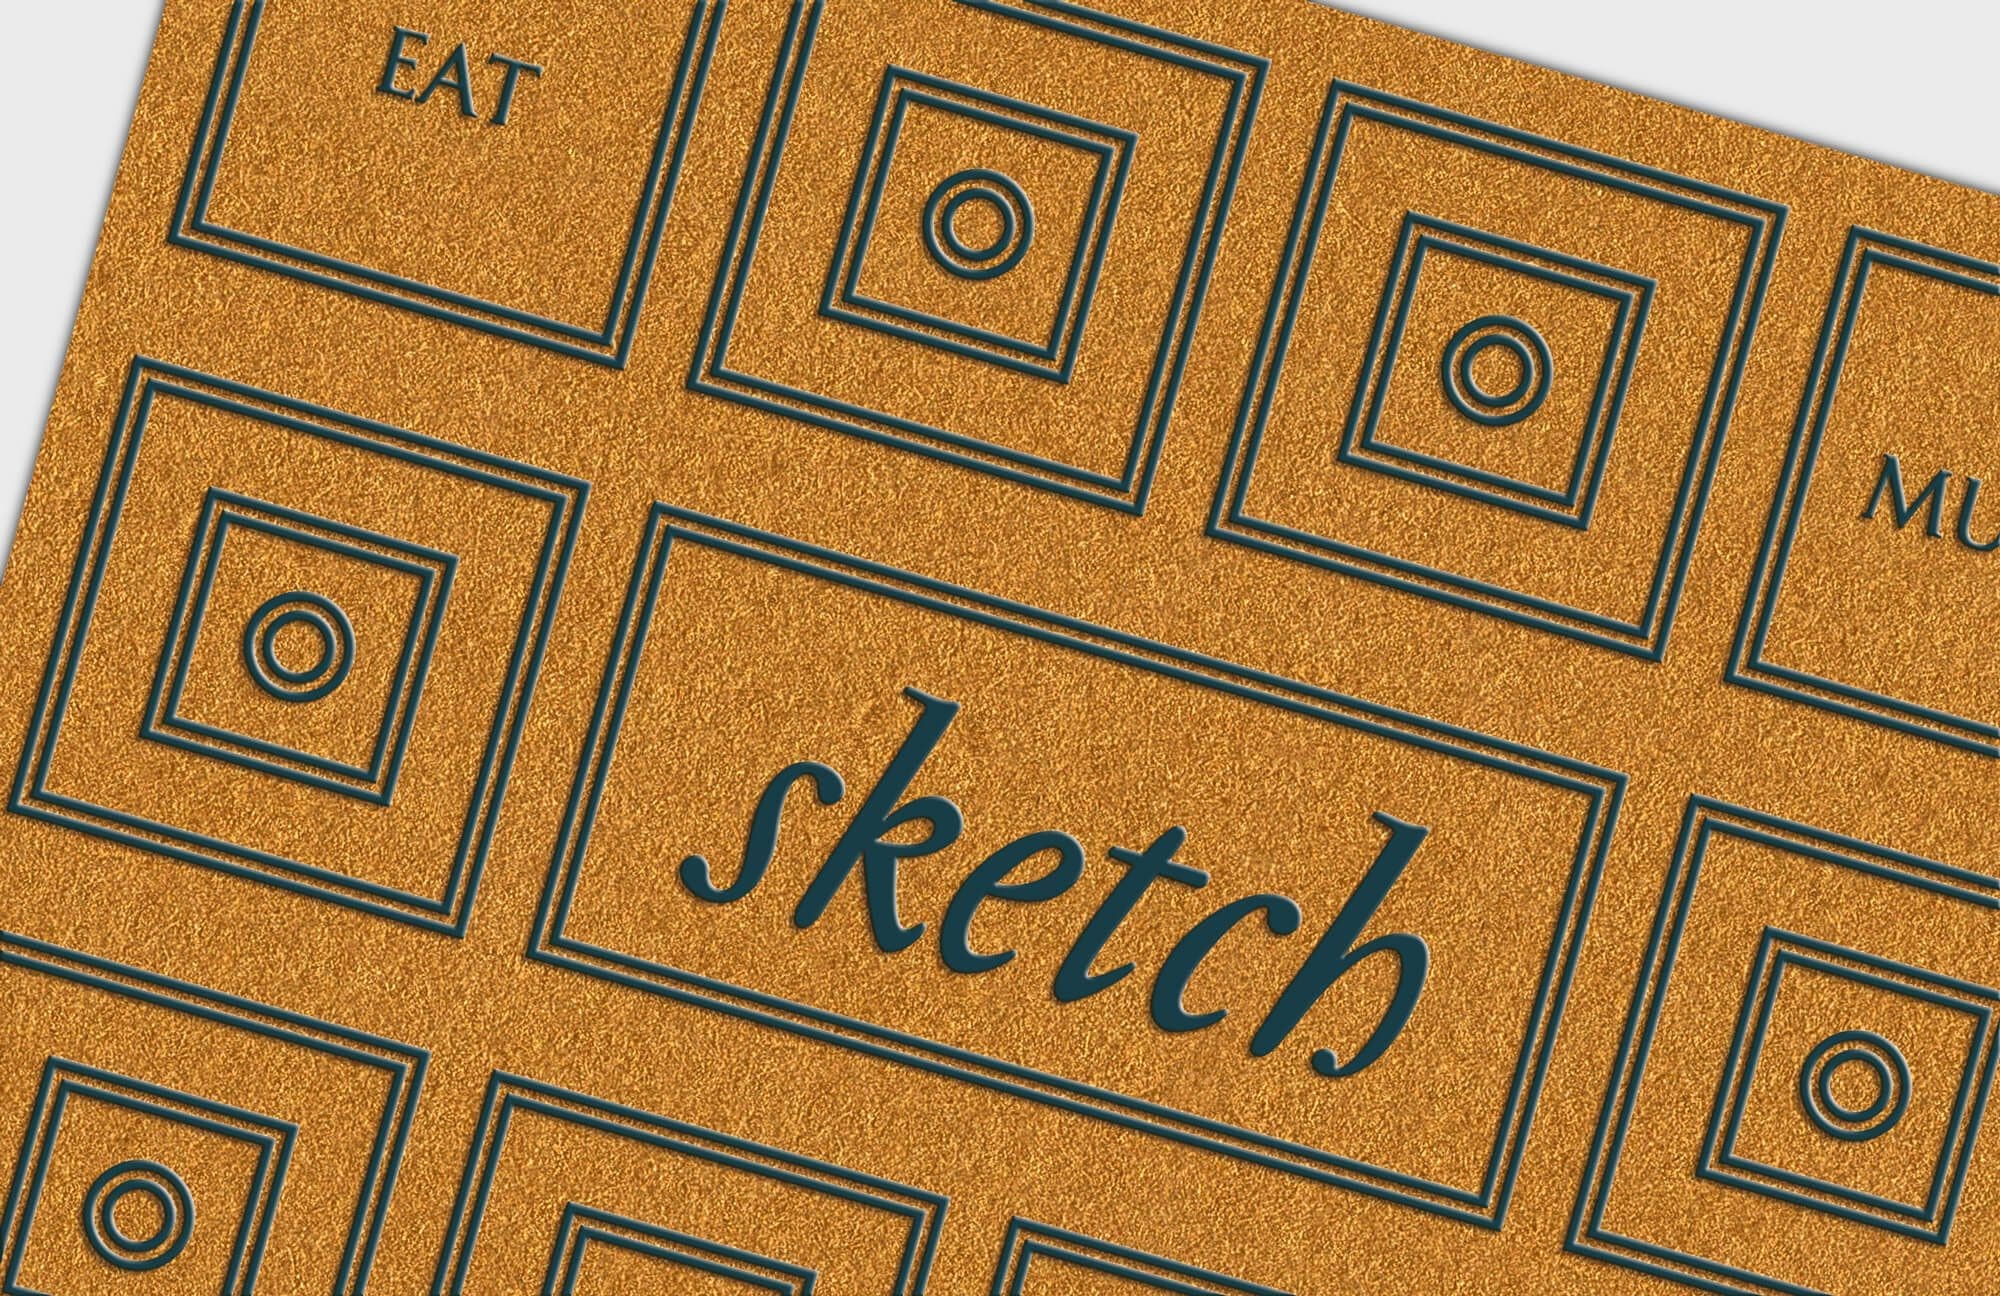 La carte de visite du restaurant Sketch à Londres, belle fabrication, papier GF smith Gold et impression pantone raised, design ichetkar